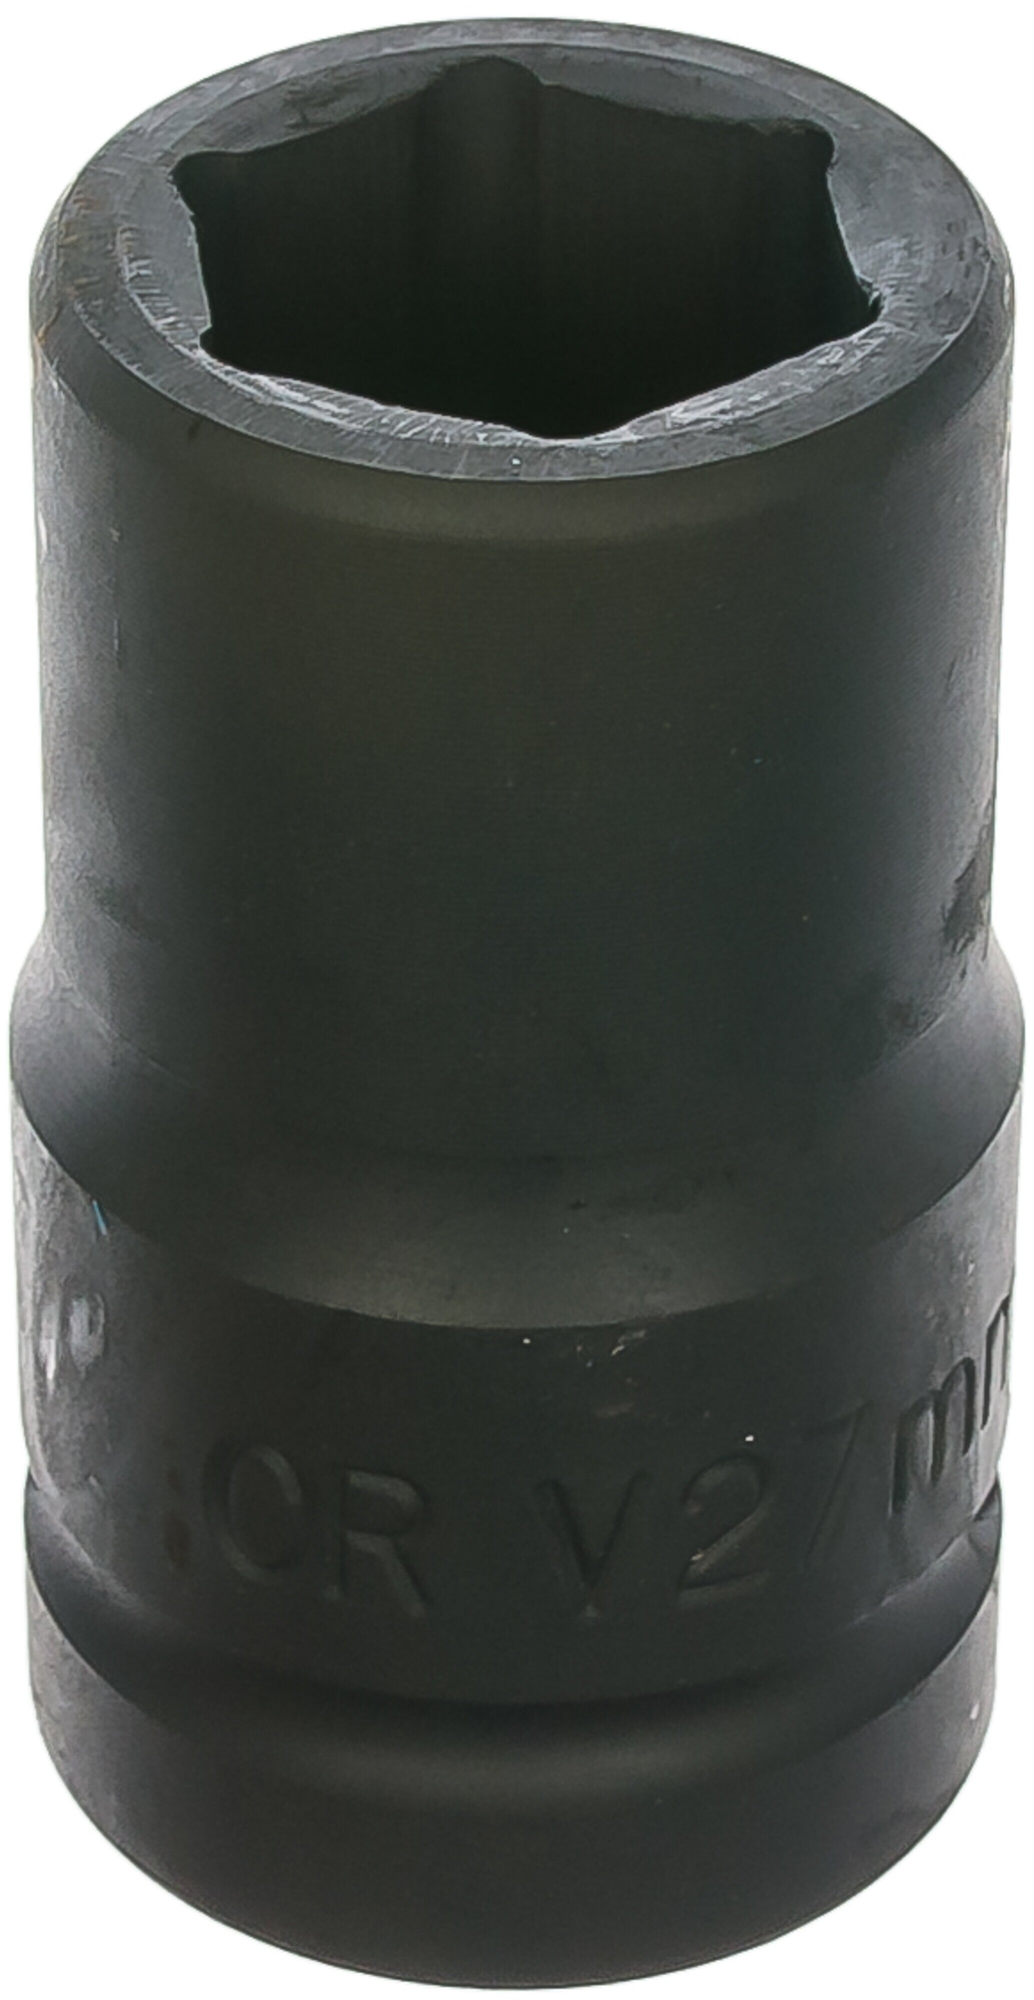 Головка для гайковёрта стальная 1' (25 мм.) × 27 БелАК